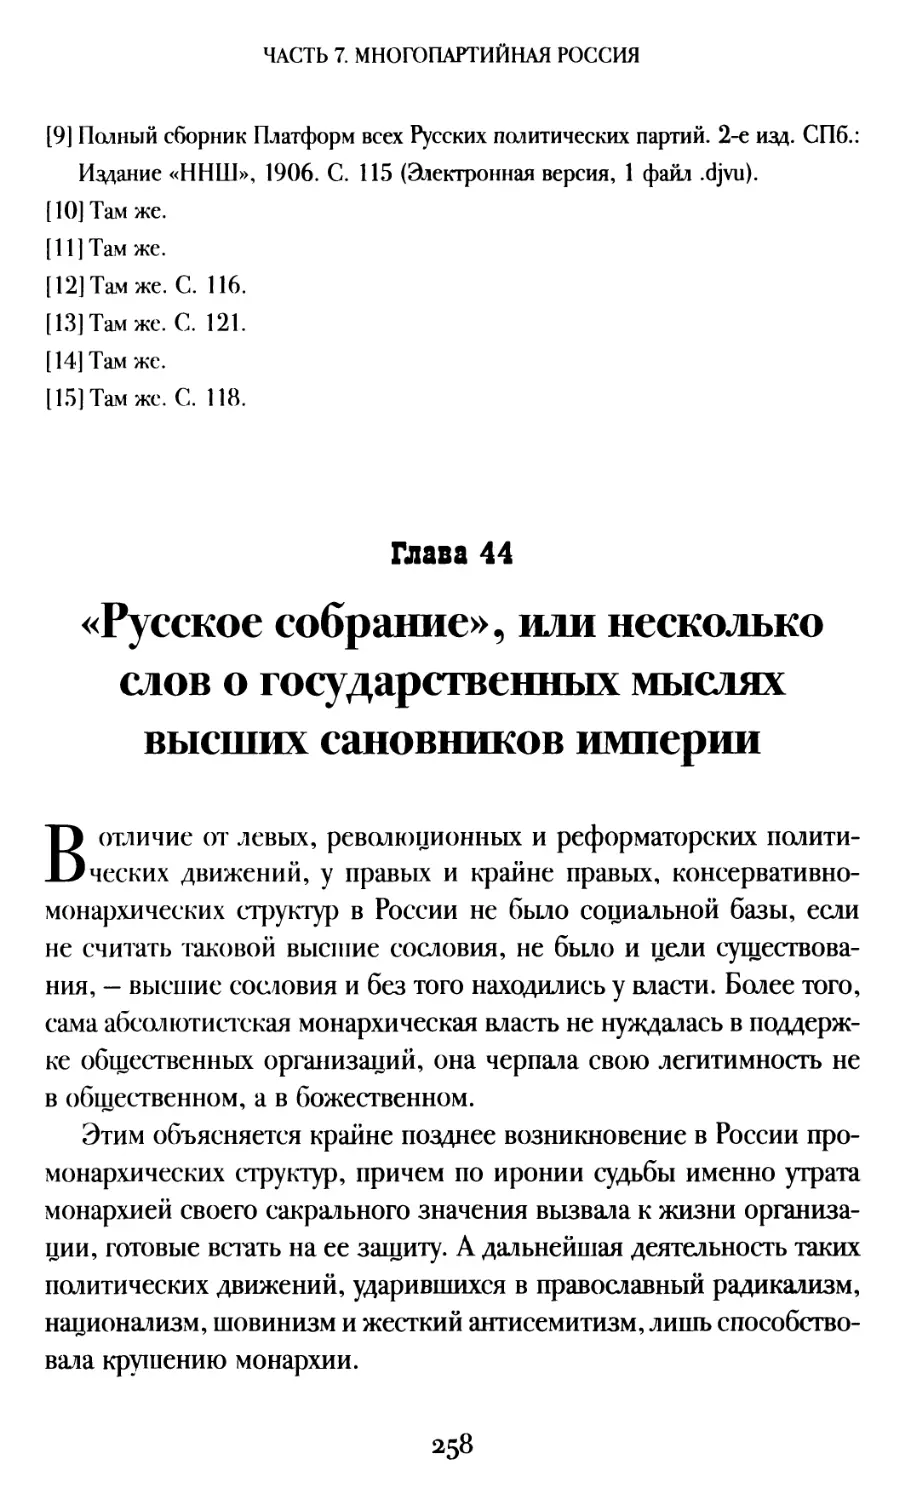 Глава 44. «Русское собрание», или несколько слов о государственных мыслях высших сановников империи